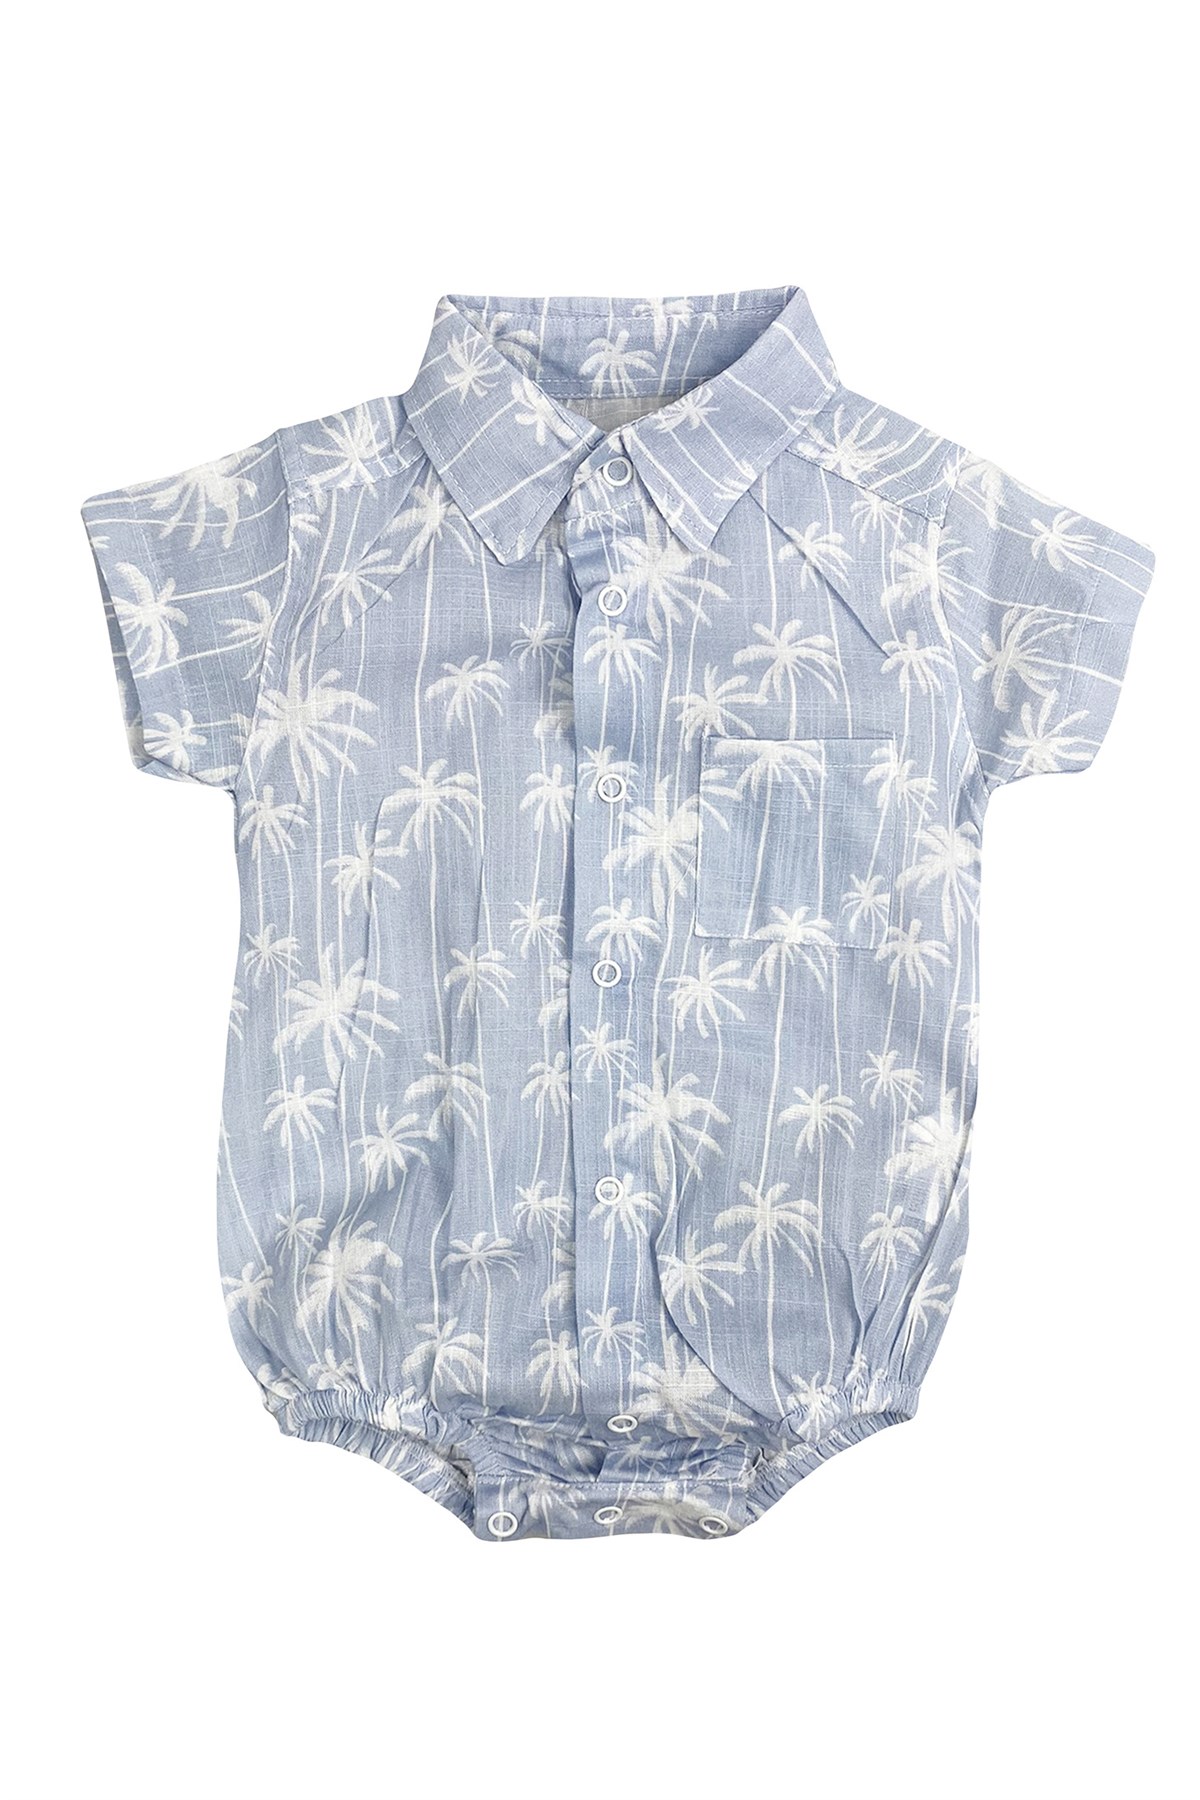 Palm Çıtçıtlı Bebek Badi Gömlek Tulum Mavi | hansbebe